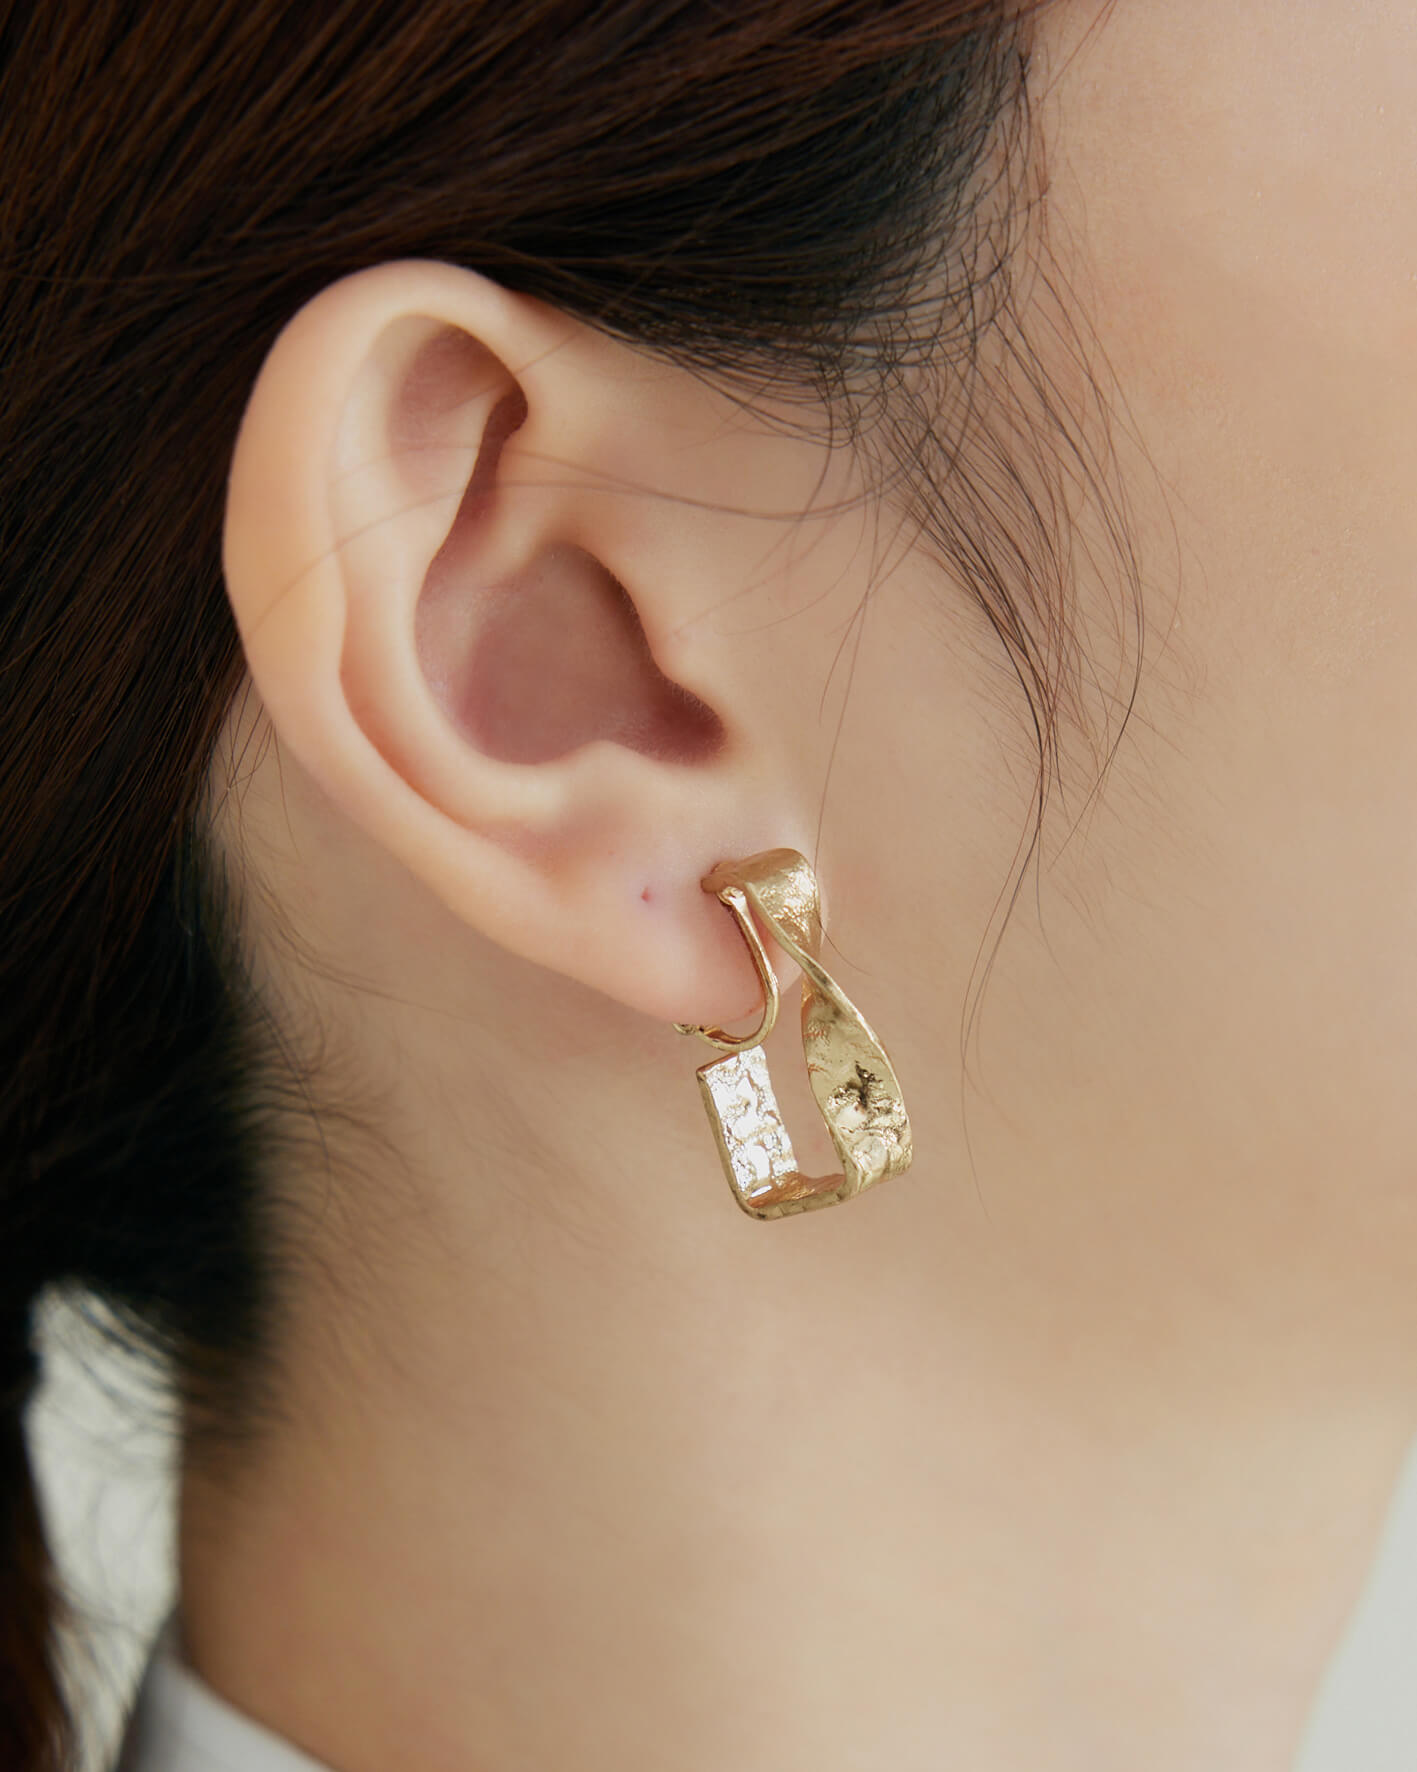 Eco安珂,韓國飾品,韓國耳環,韓國耳骨夾,垂墜耳環,螺旋夾耳環,可調式耳夾耳環,螺旋夾C圈耳環